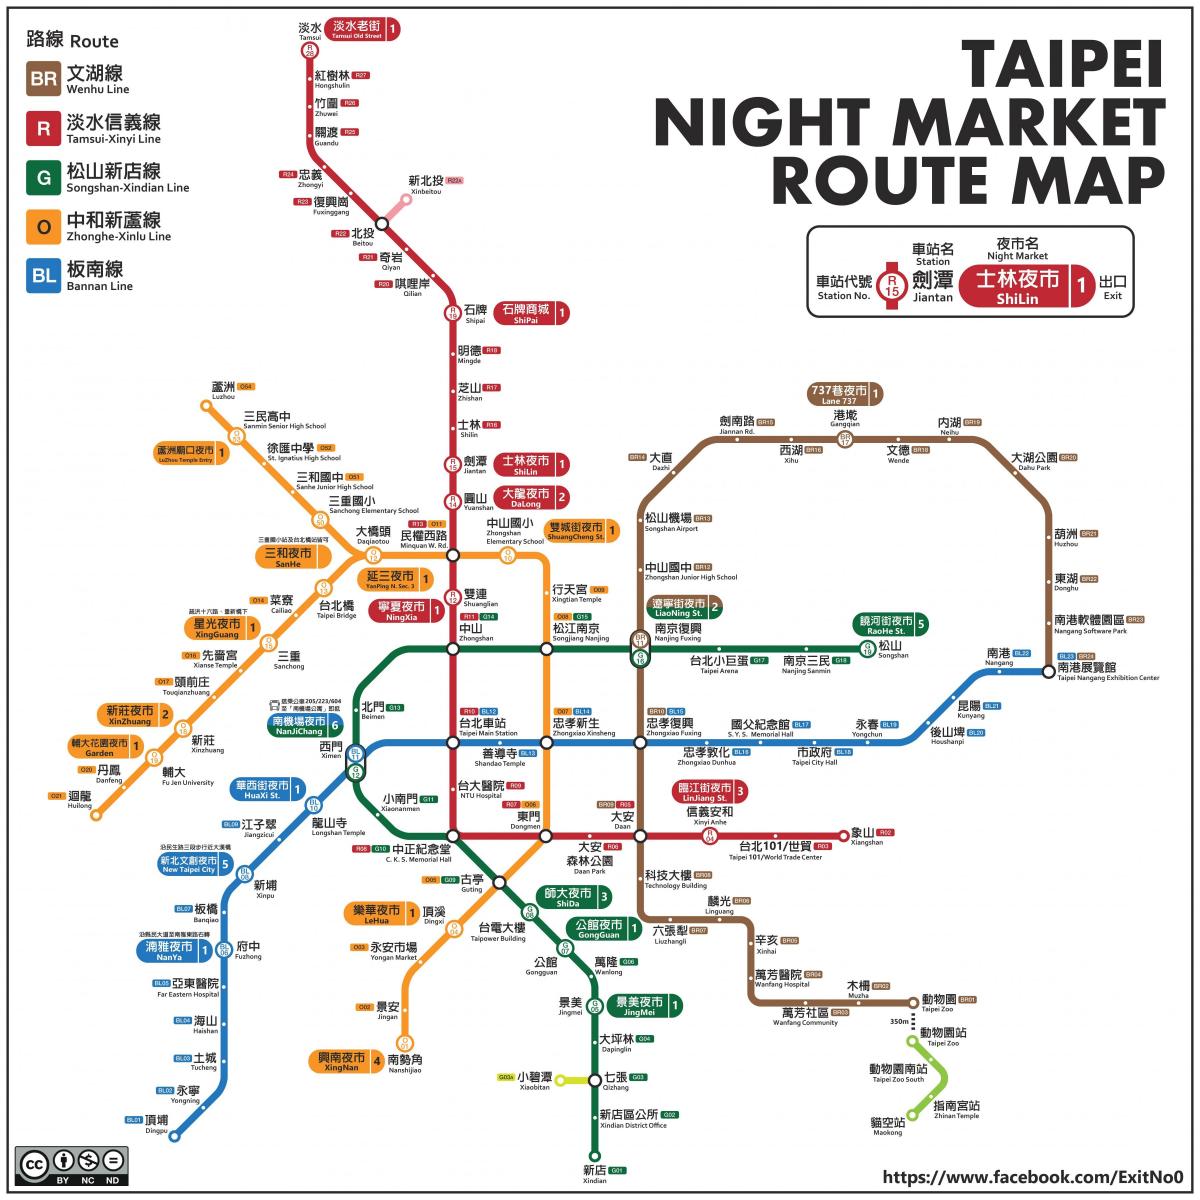 Taipei haritası gece pazarları